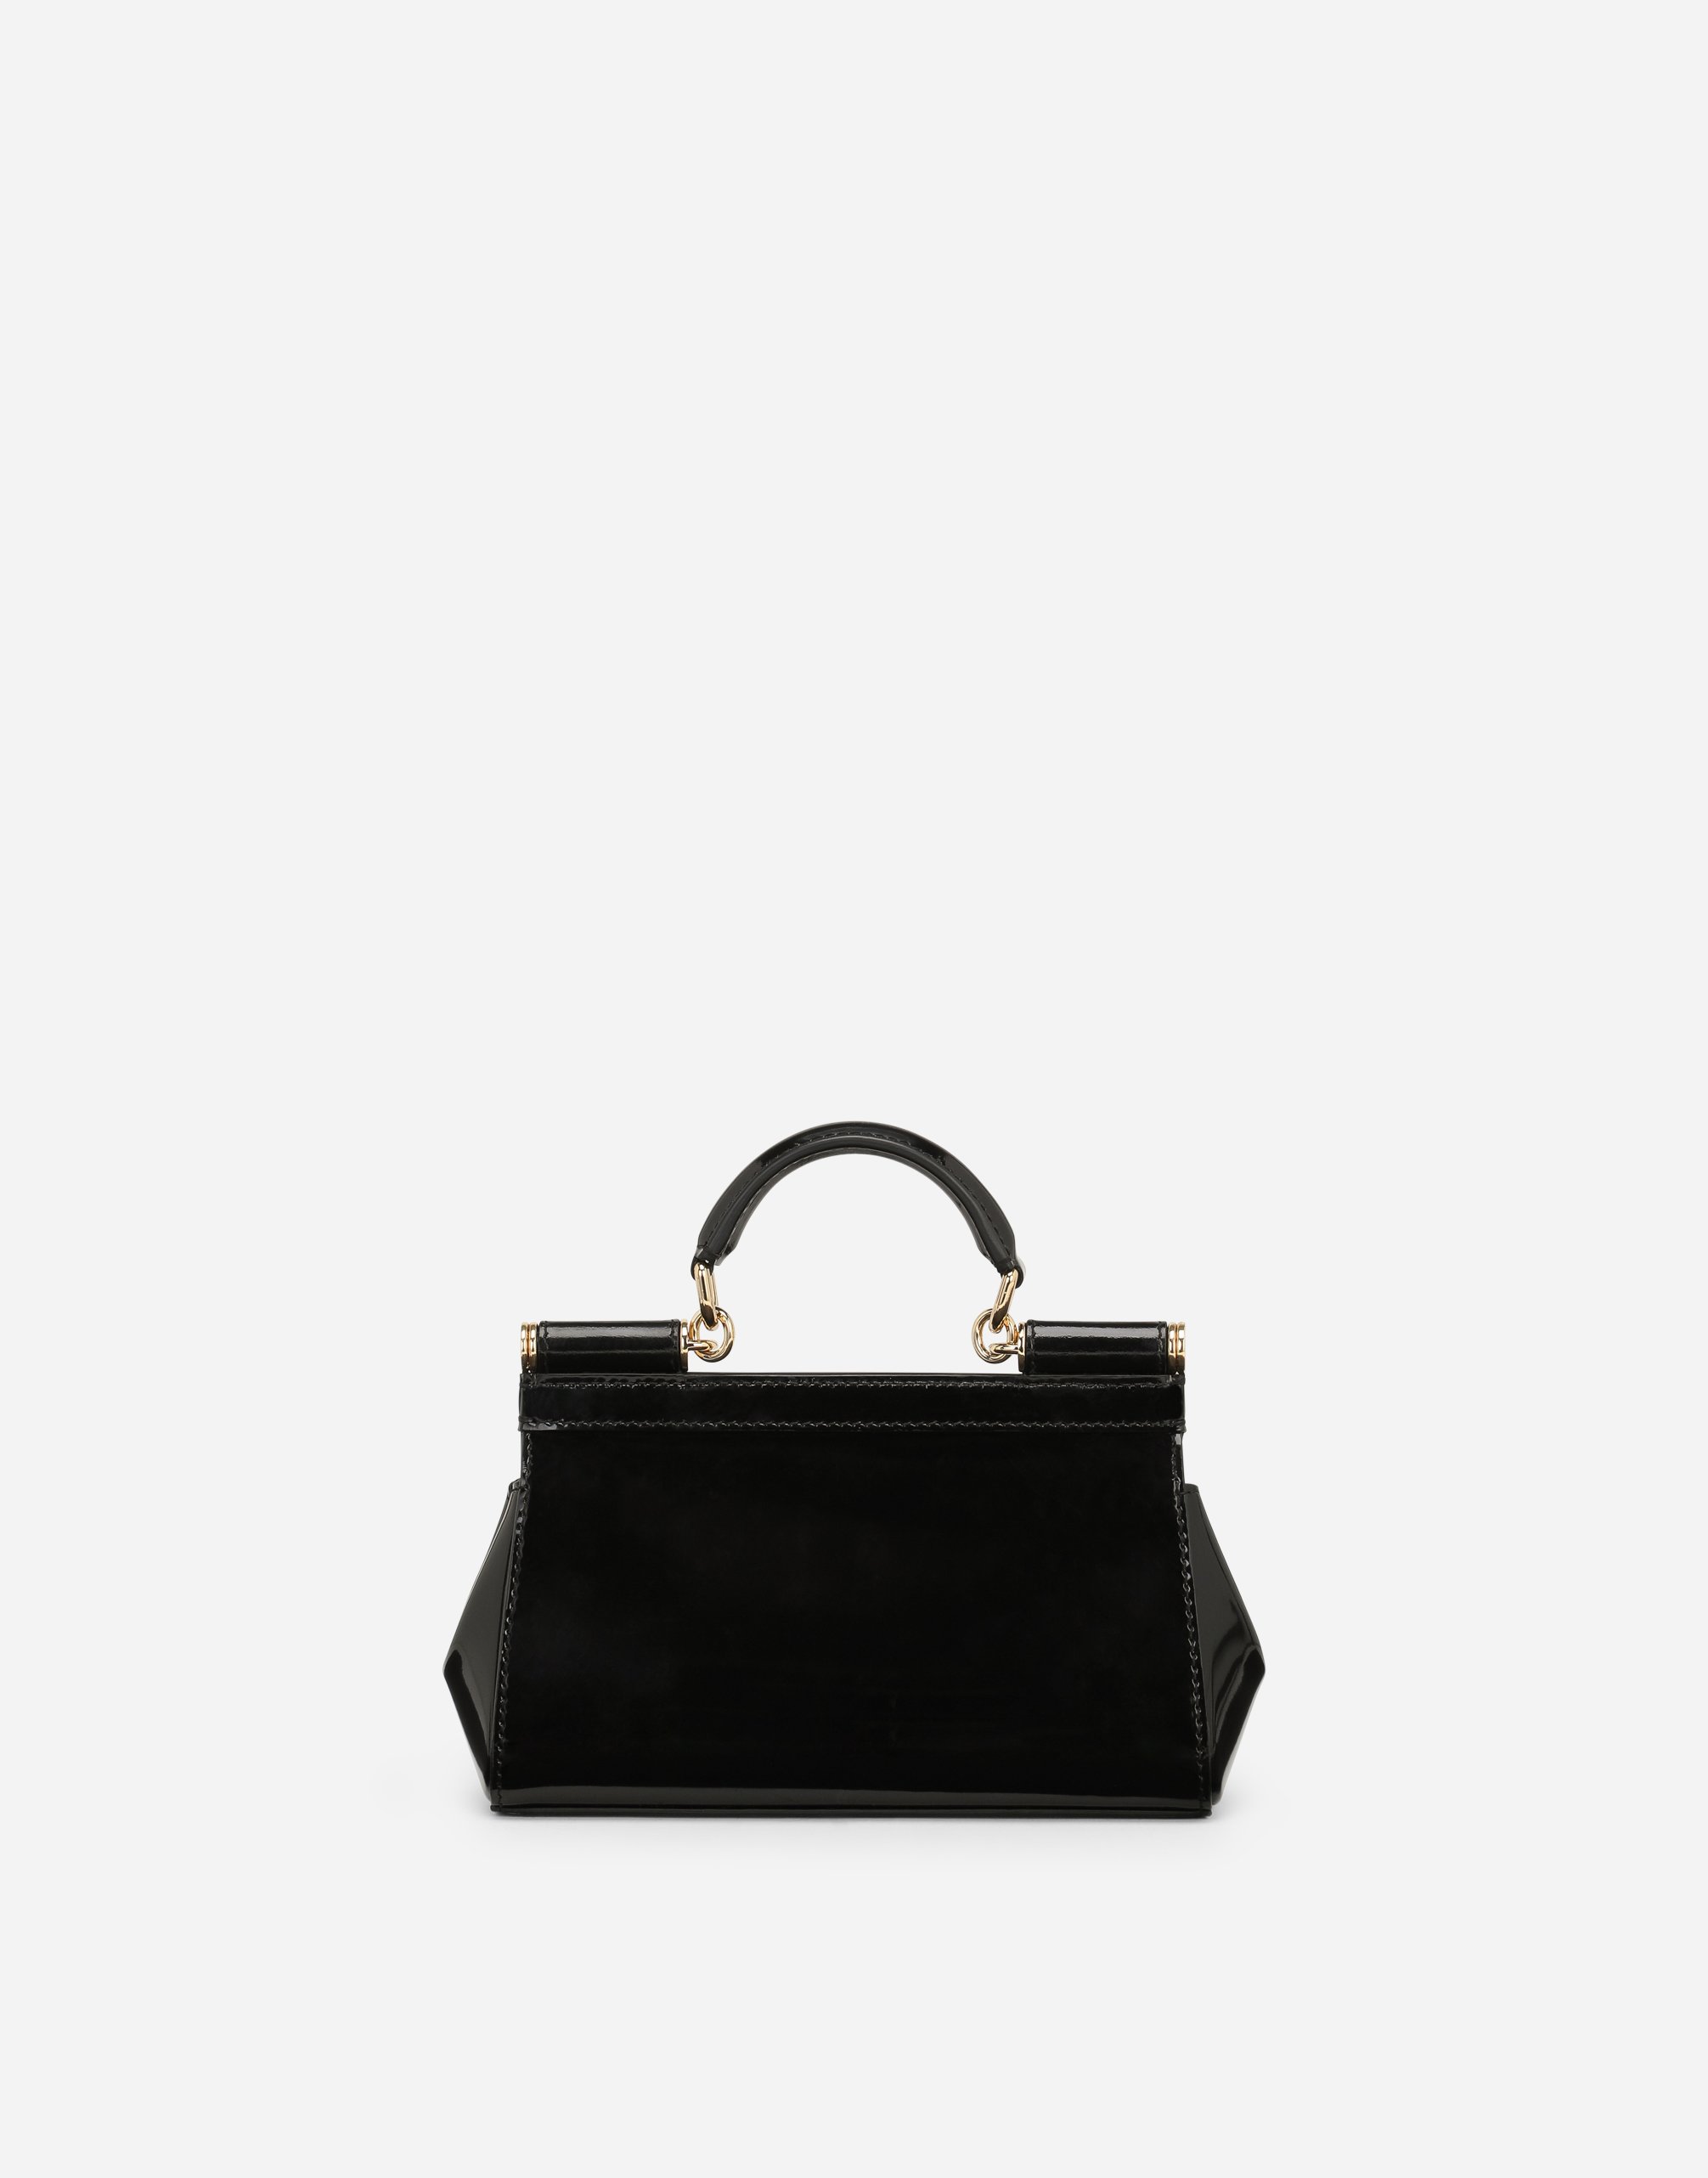 Small Sicily handbag in Black